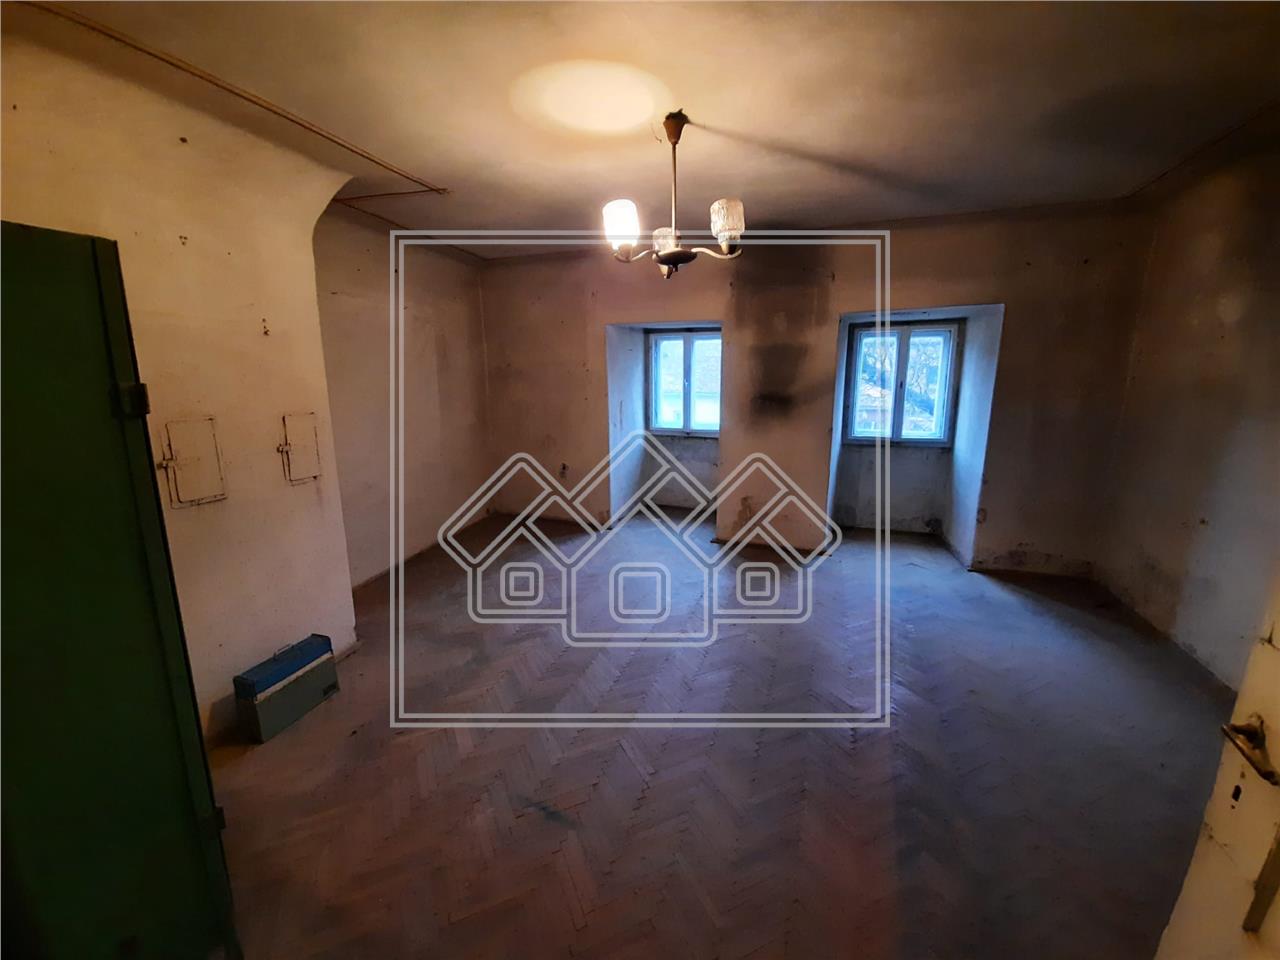 Wohnung zum Verkauf in Sibiu - 2 Zimmer, Keller - ultrazentral